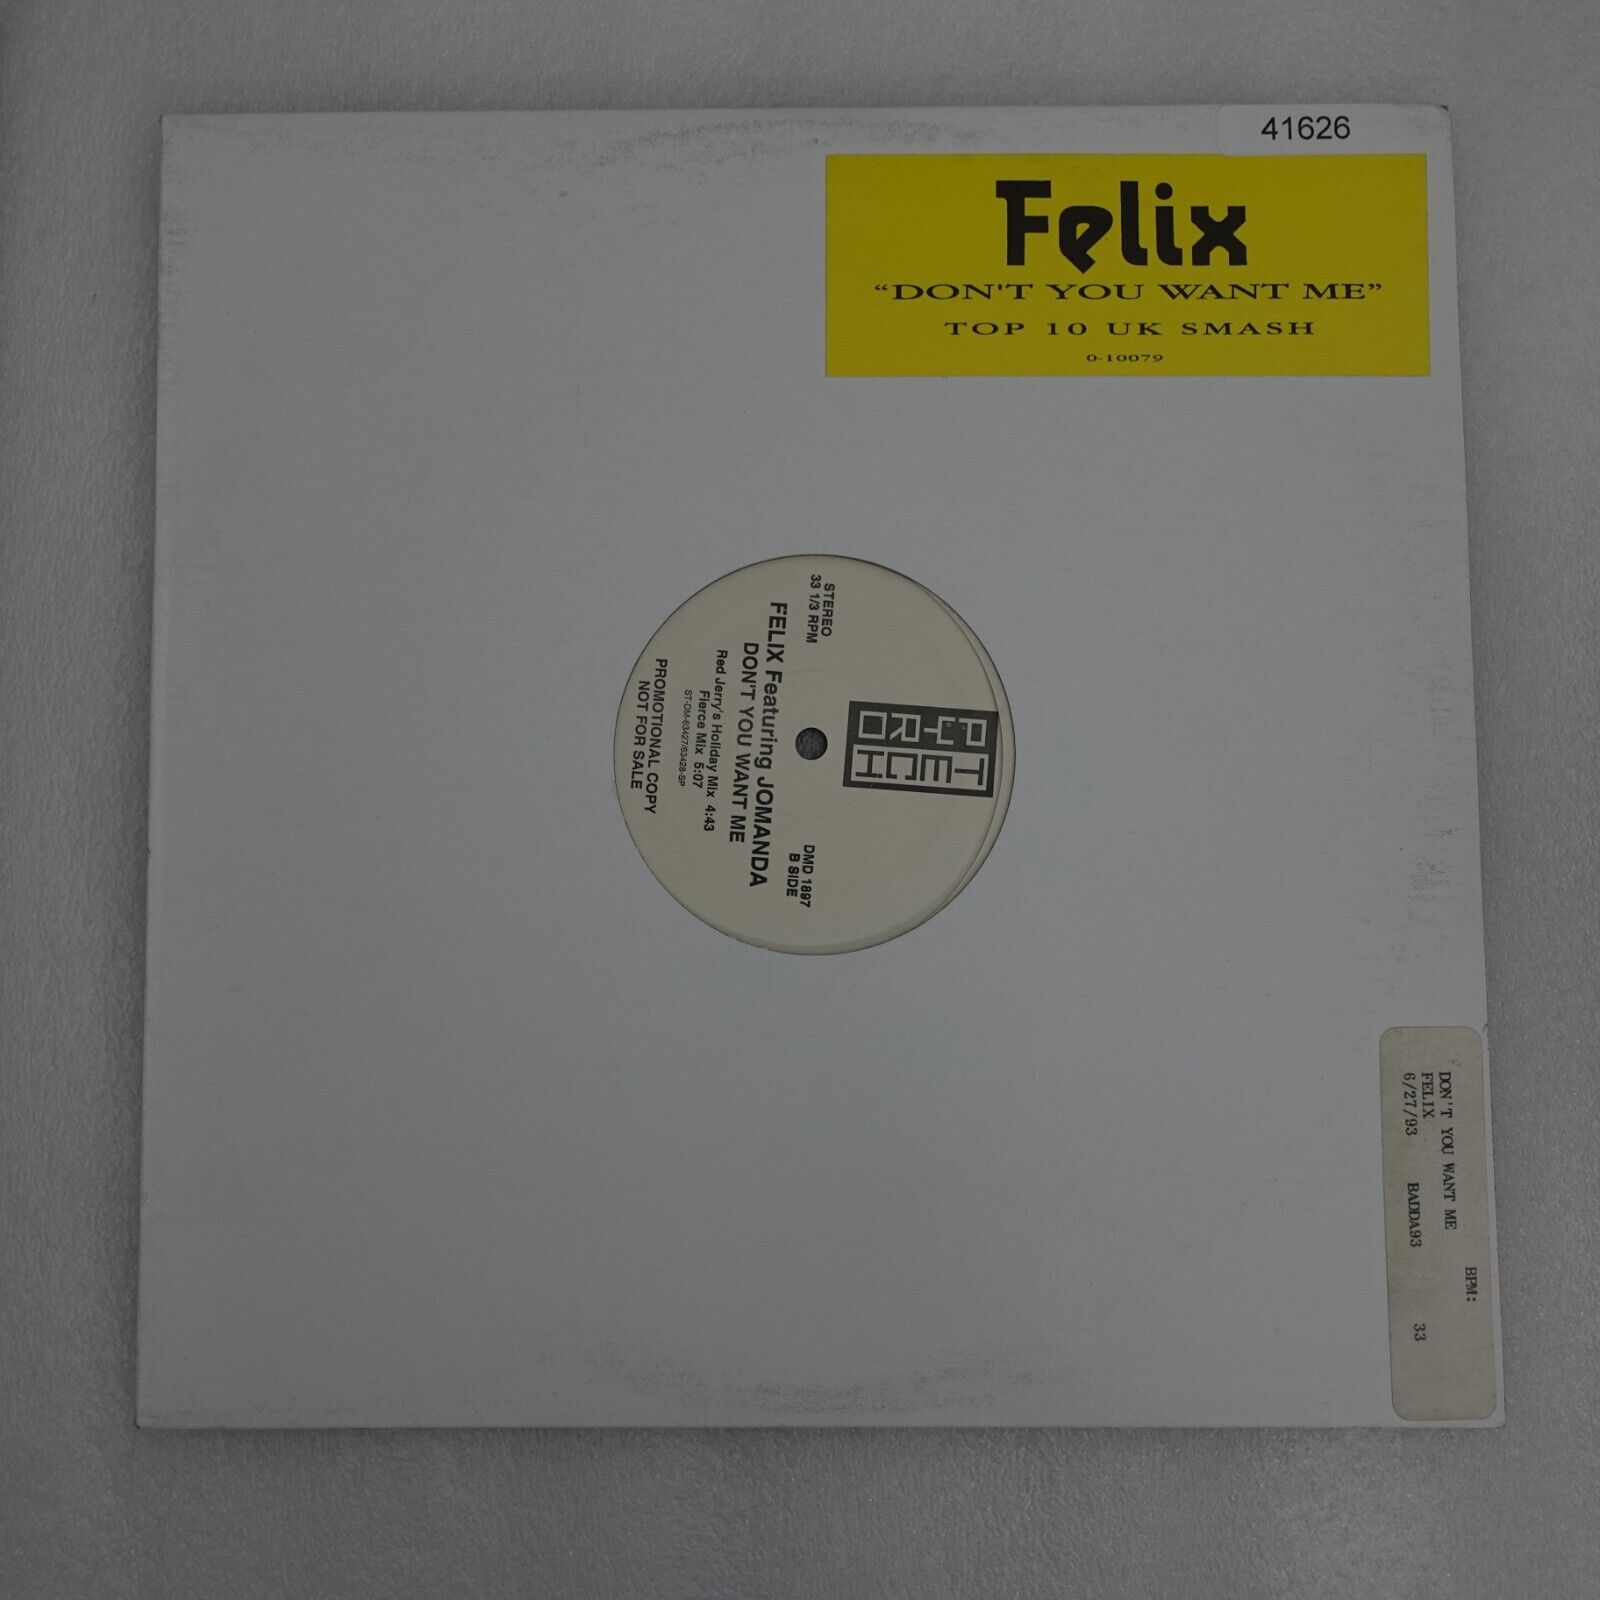 Flelix Ft Jomanda Don’T You Want Me PROMO SINGLE Vinyl Record Album